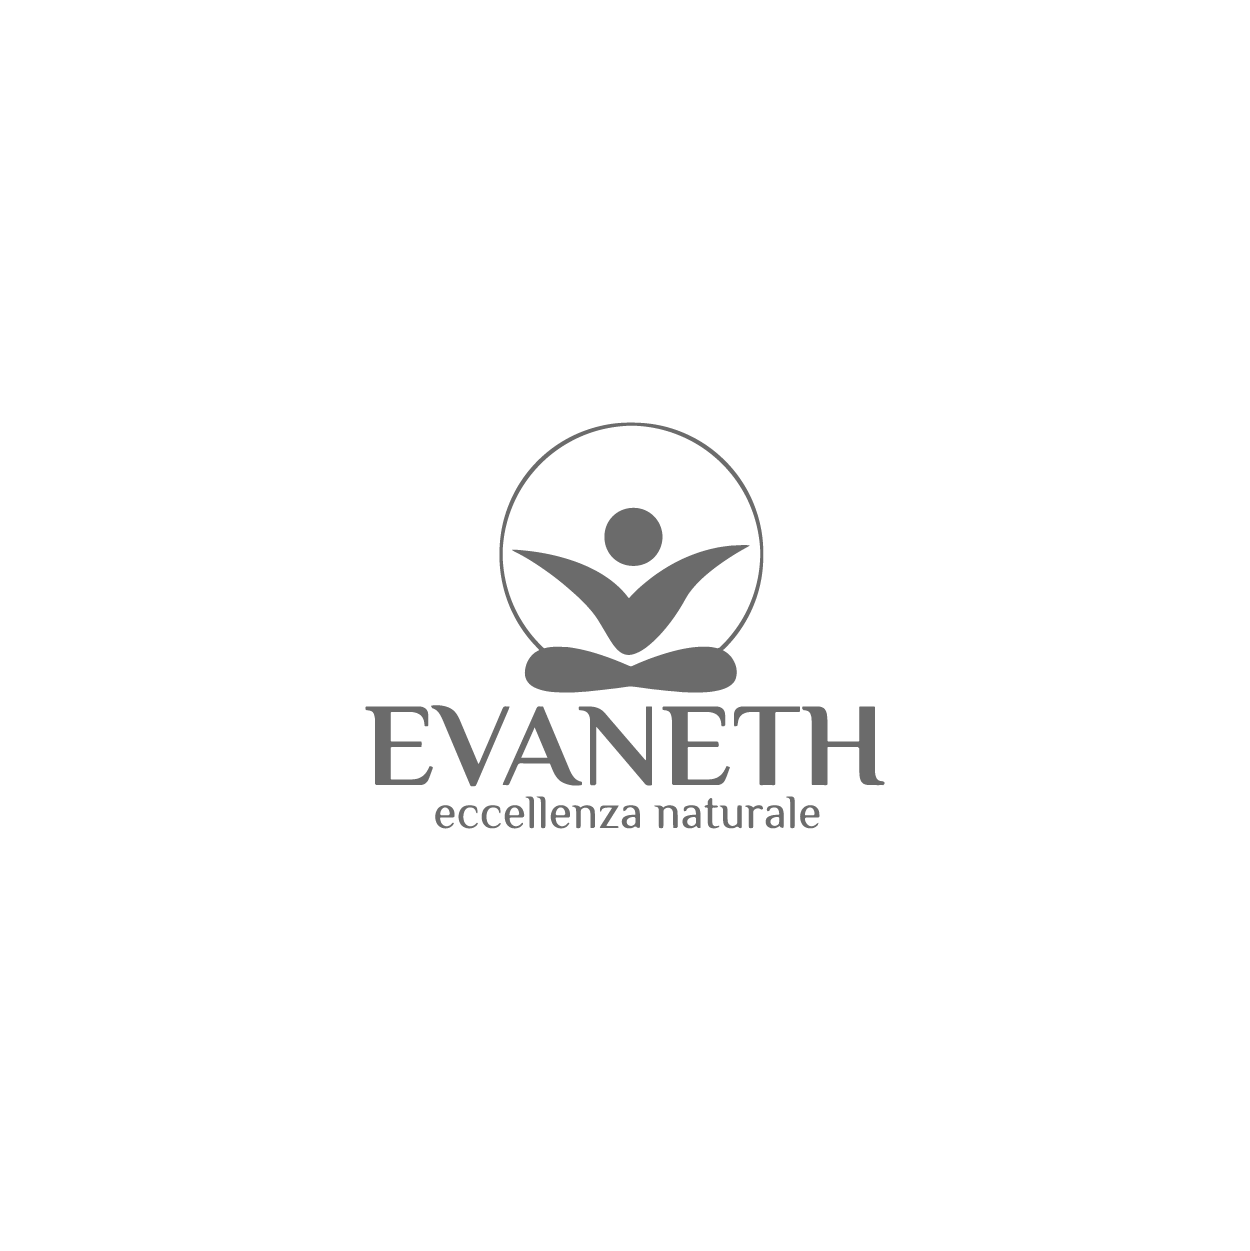 Advertising Evaneth | Ad.One Agenzia di comunicazione